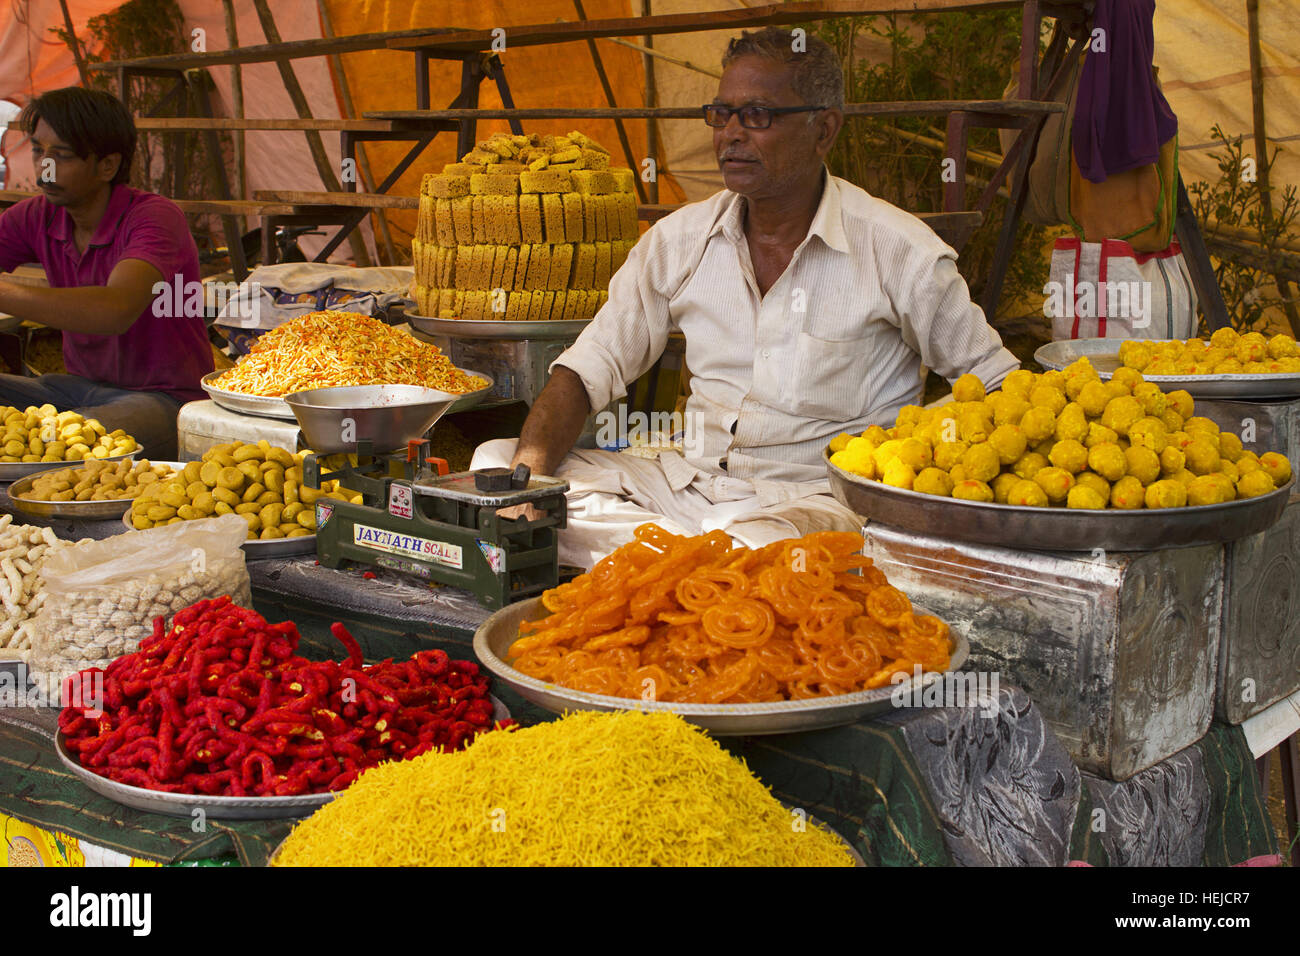 Vendor selling Indian sweets, Pune, Maharashtra India Stock Photo